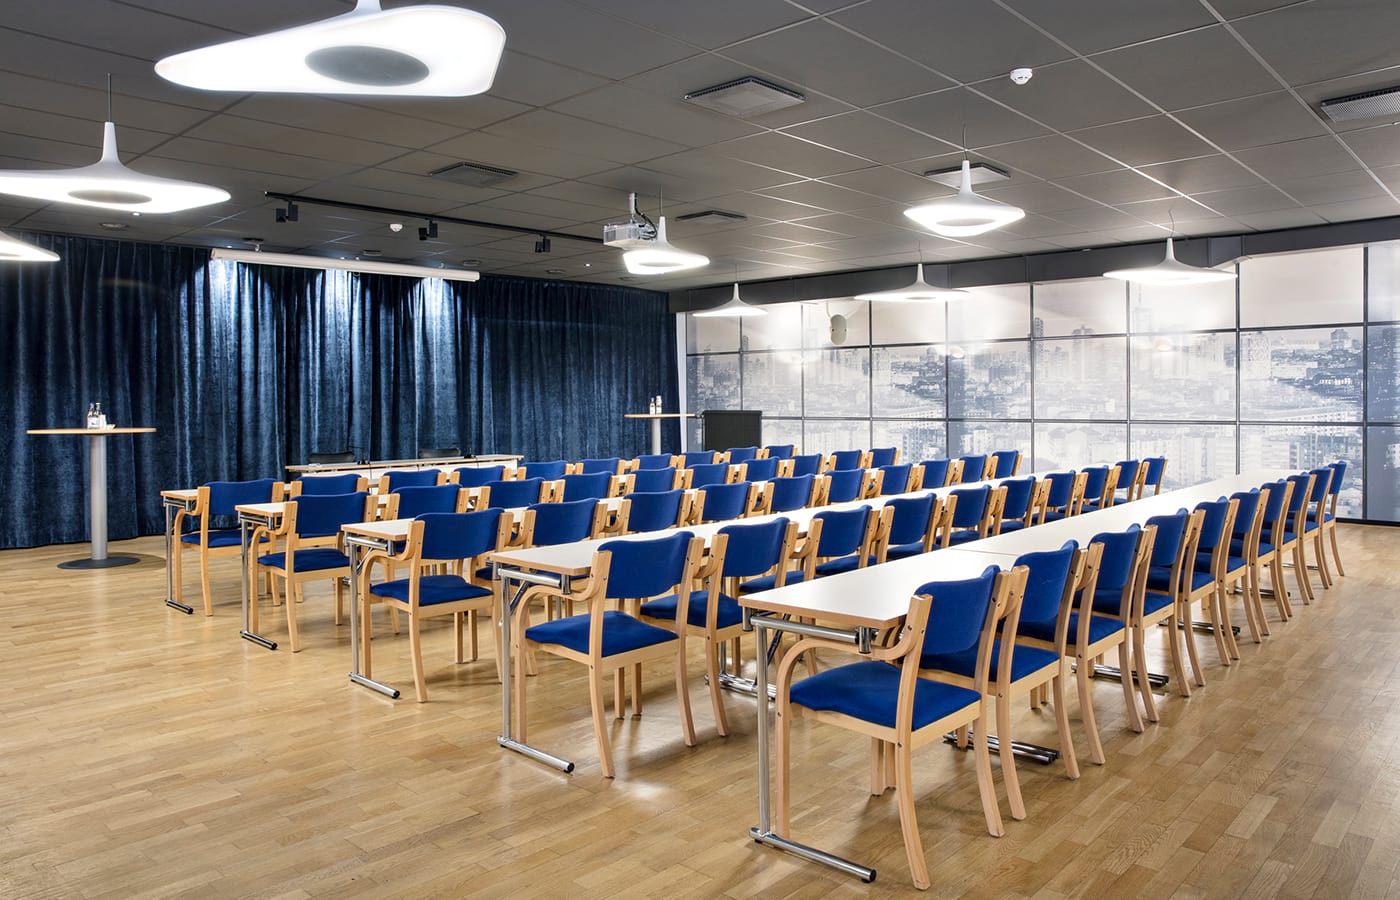 Konferensrum med ljust trägolv, vita långa bord, trästolar med blå dynor, stora fönster, vita lampor i taket